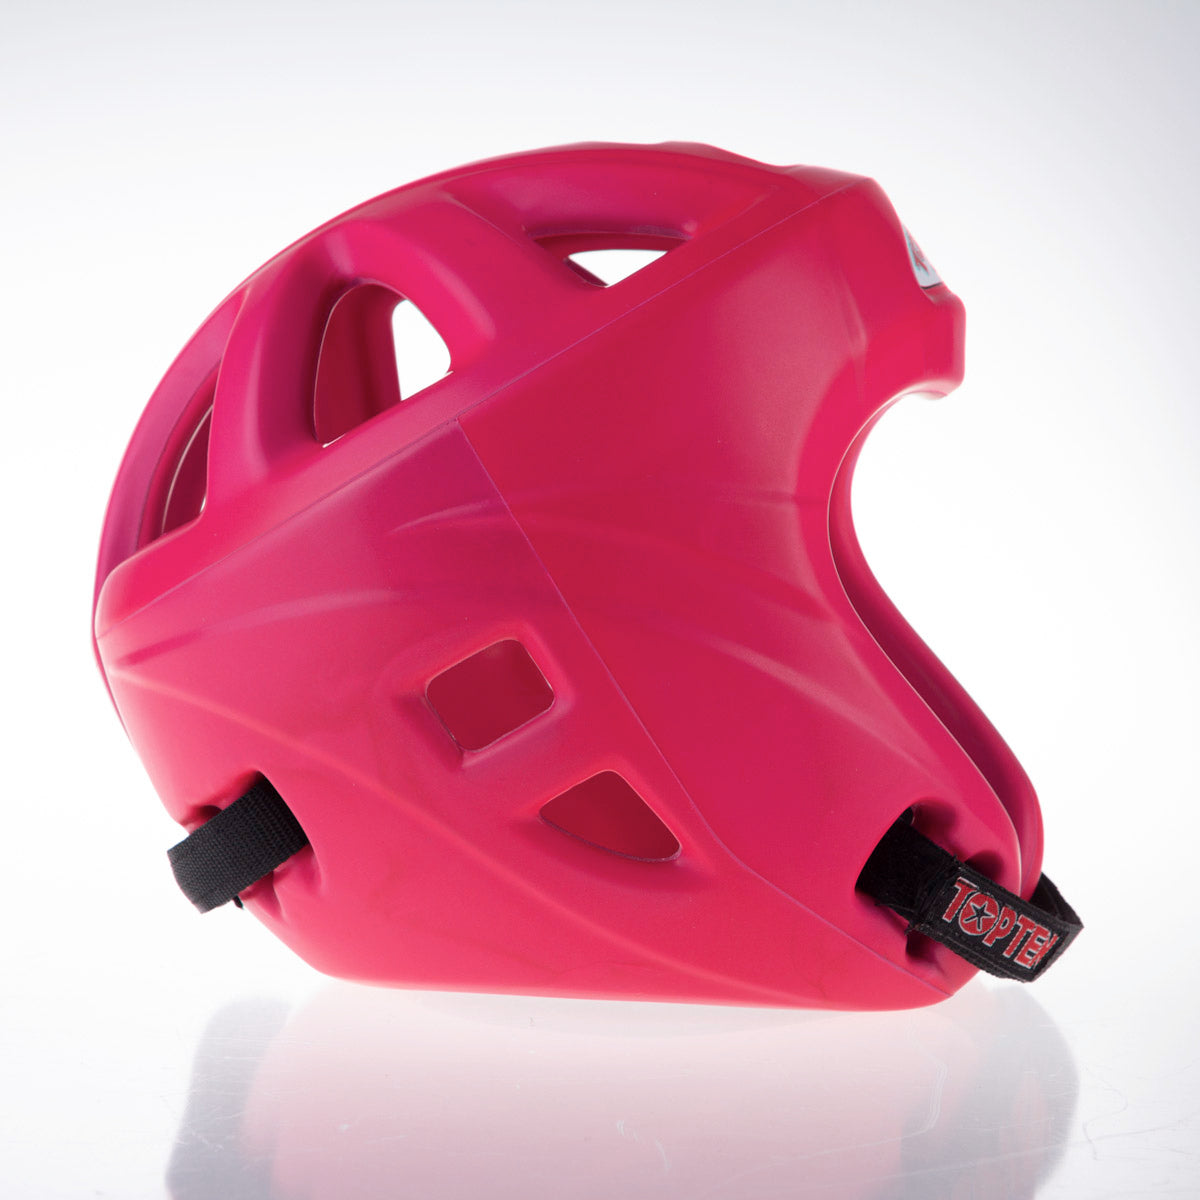 Kopfschutz Top Ten Avantgarde - pink, 4066-7